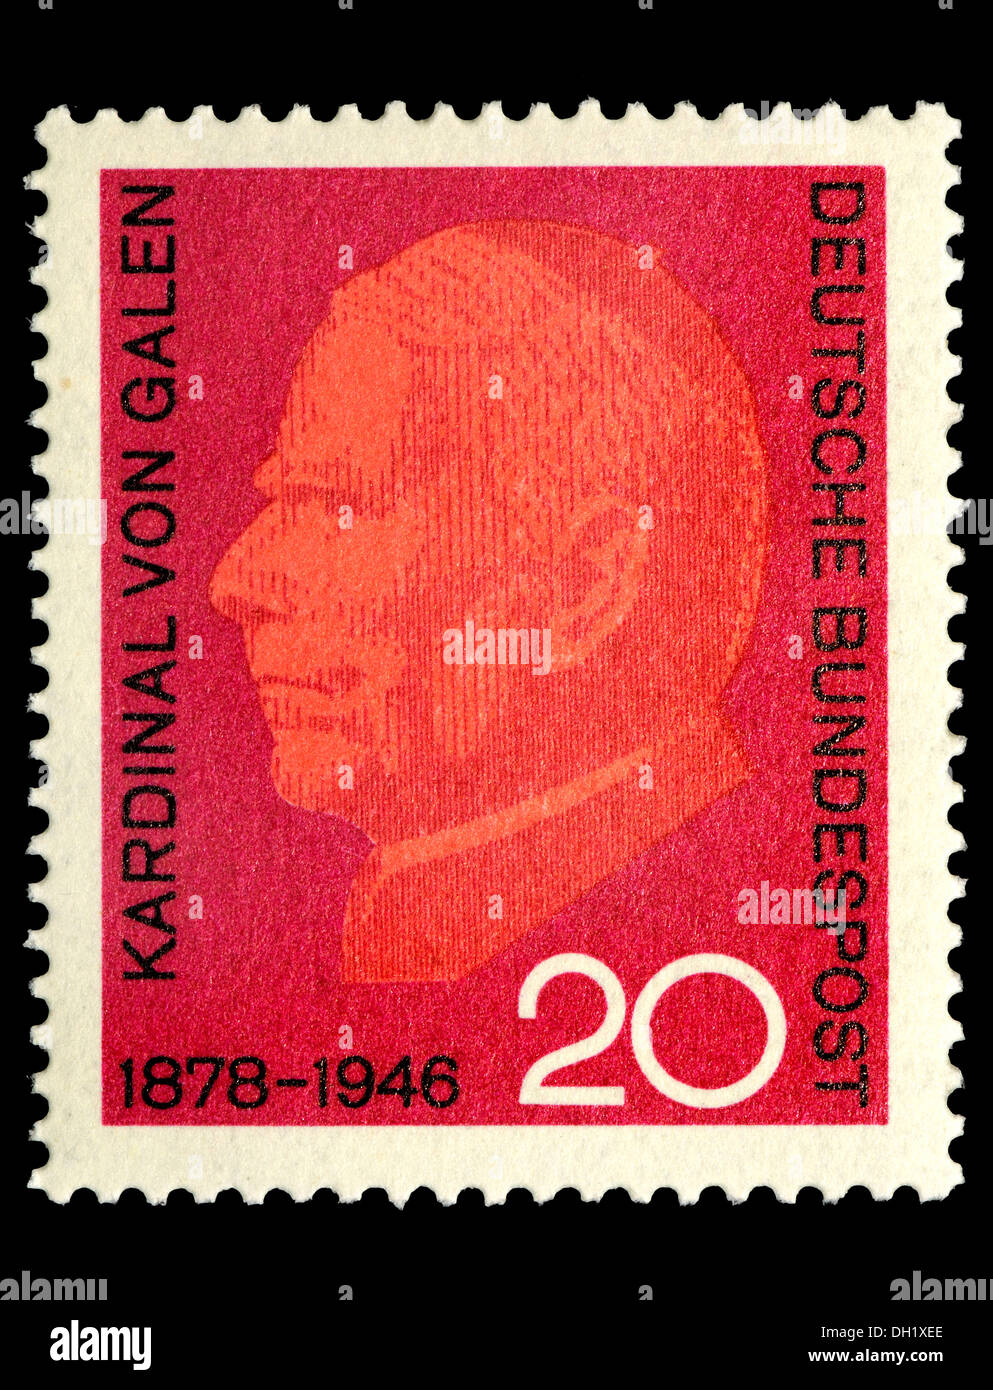 Porträt von Kardinal von Gallen (Clemens August Graf von Galen: 1878-1946-katholischer Bischof und Kardinal) auf Deutsche Briefmarke. Stockfoto